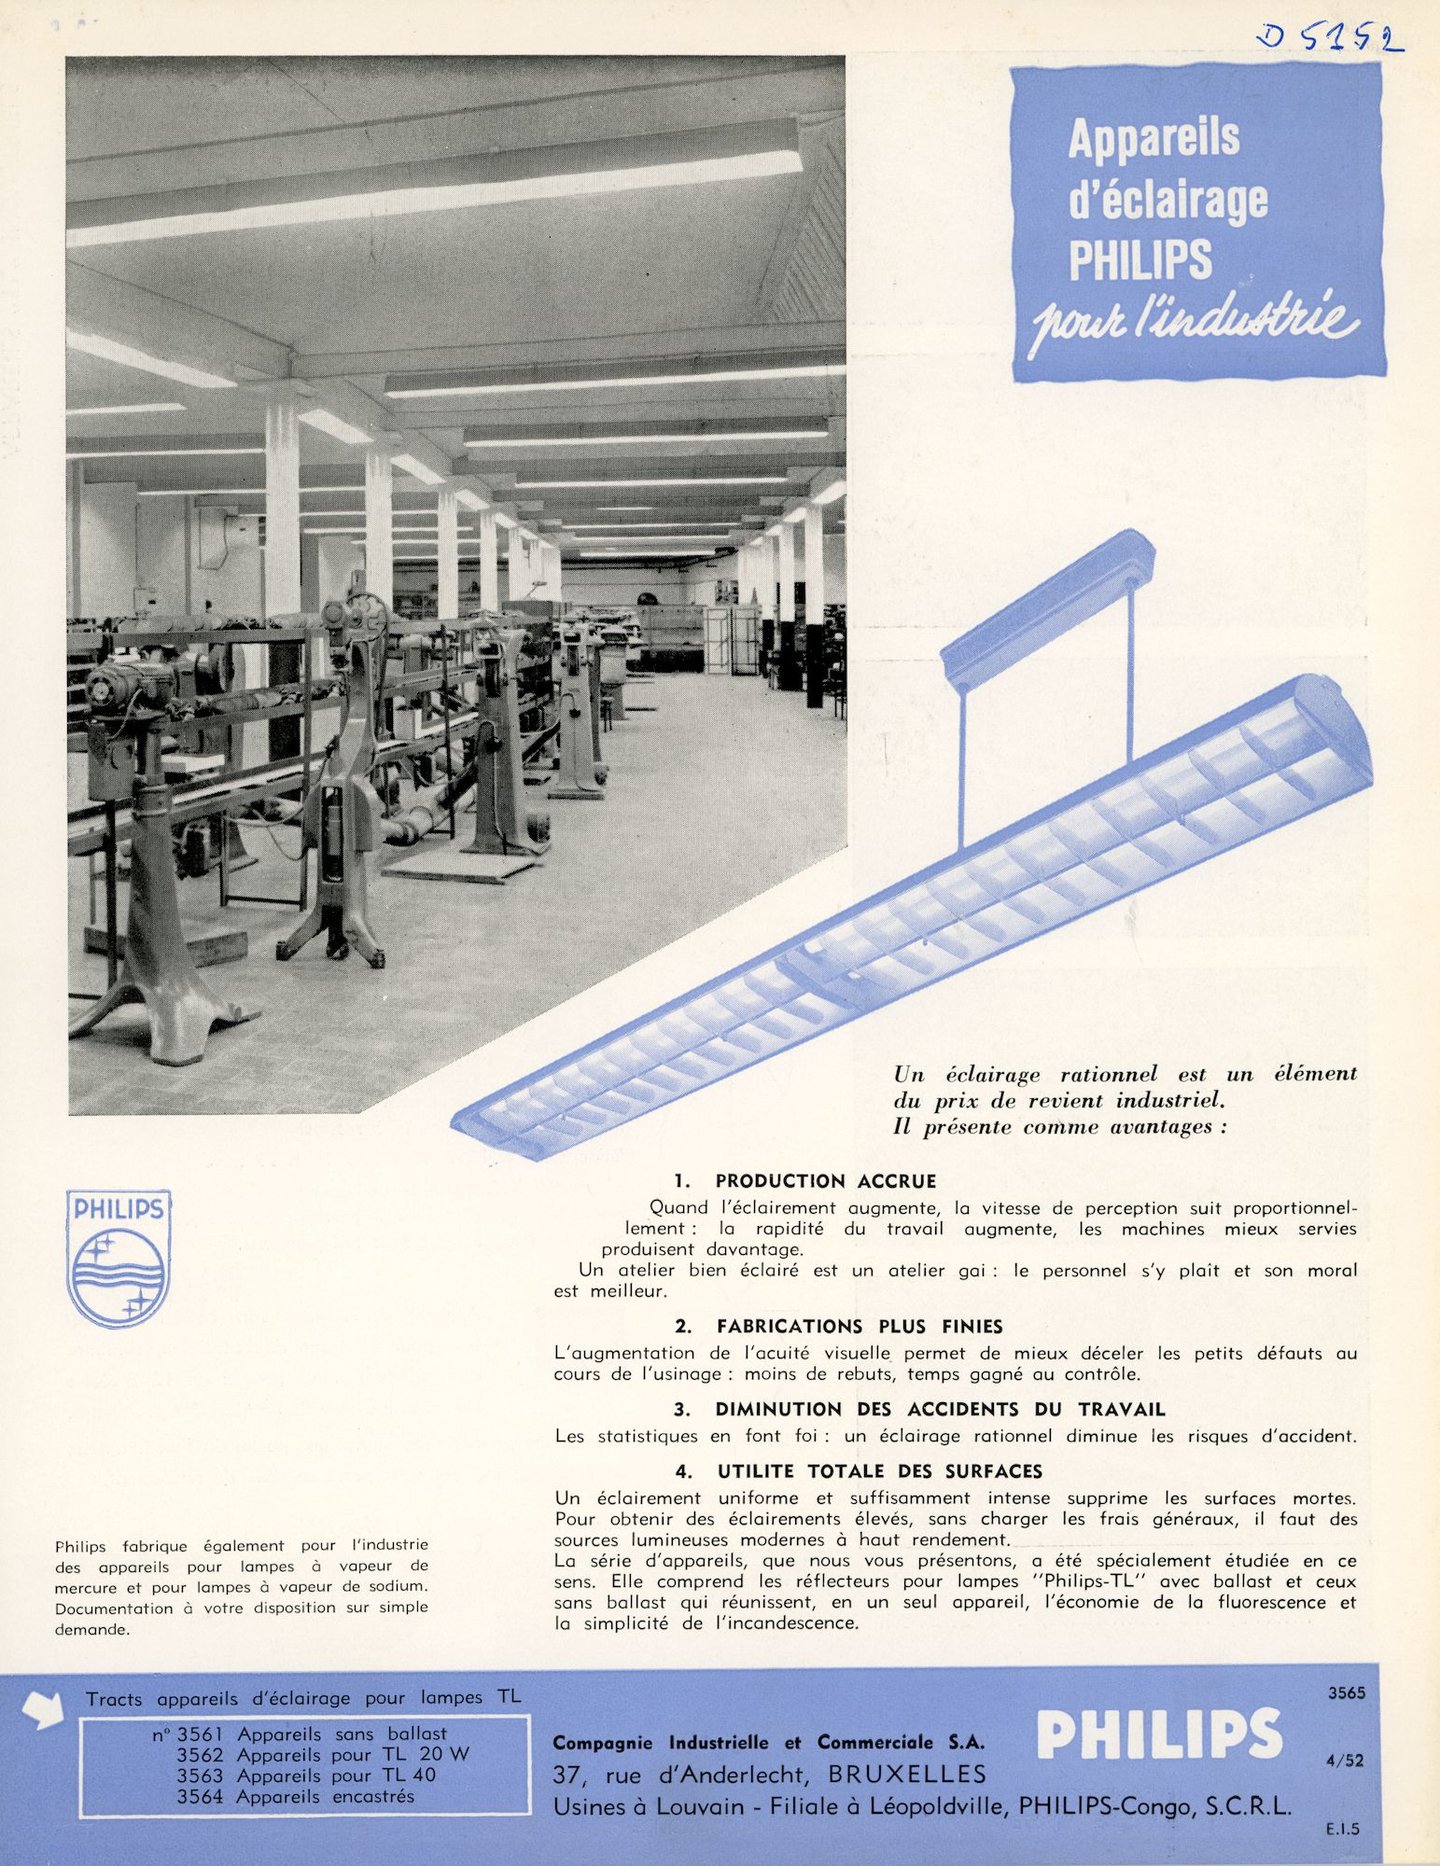 Productinformatie over verlichtingsapparatuur van het merk Philips, geschikt voor industreel gebruik.